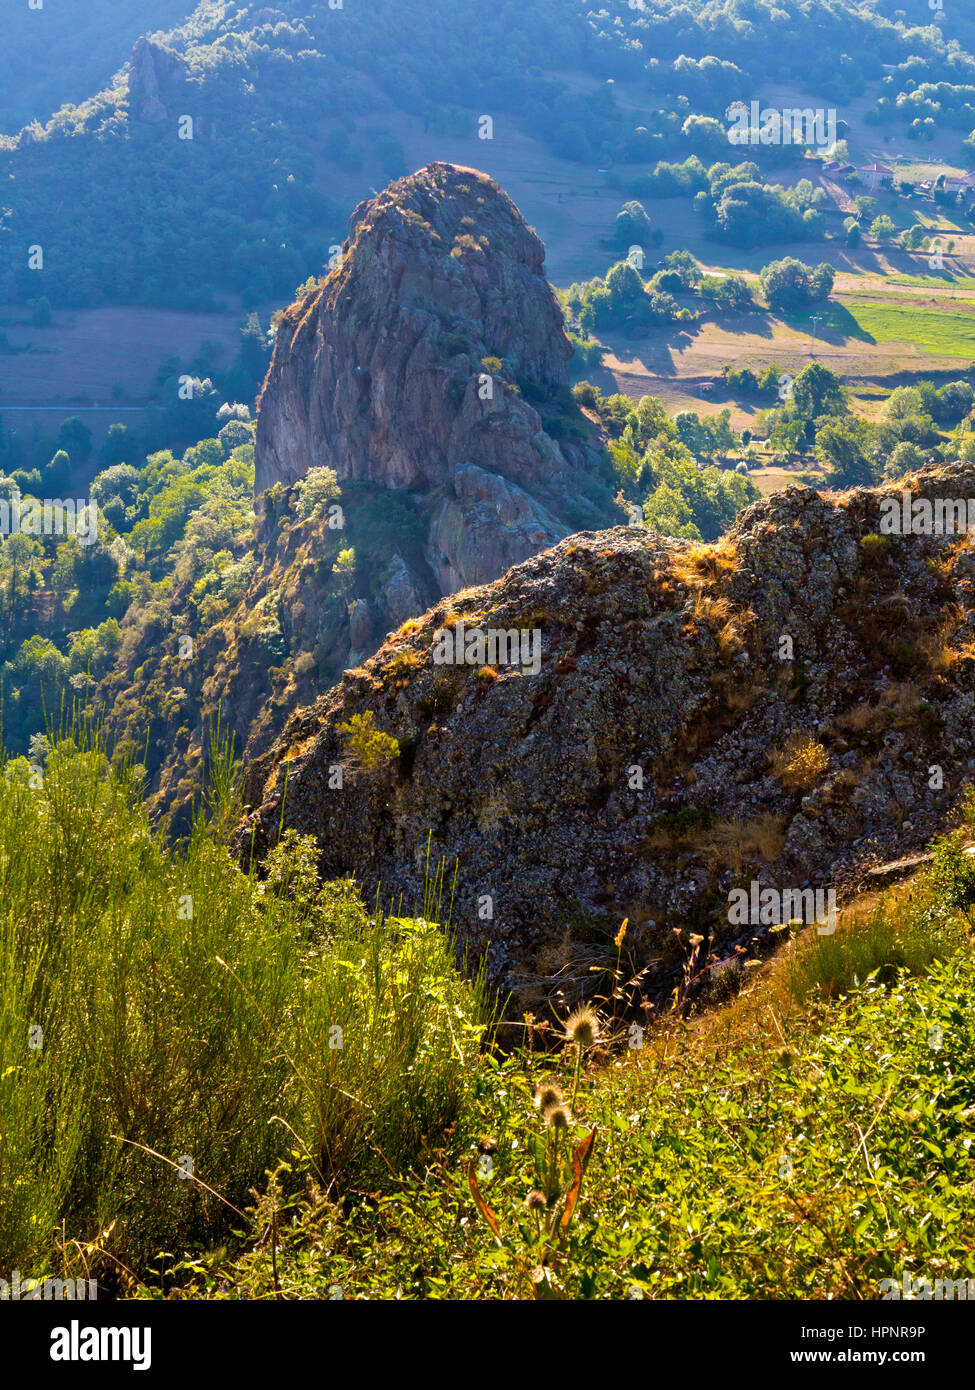 Rocky outcrop at Penallana in the Vega de Liebana, Picos de Europa National Park, Cantabria, northern Spain Stock Photo